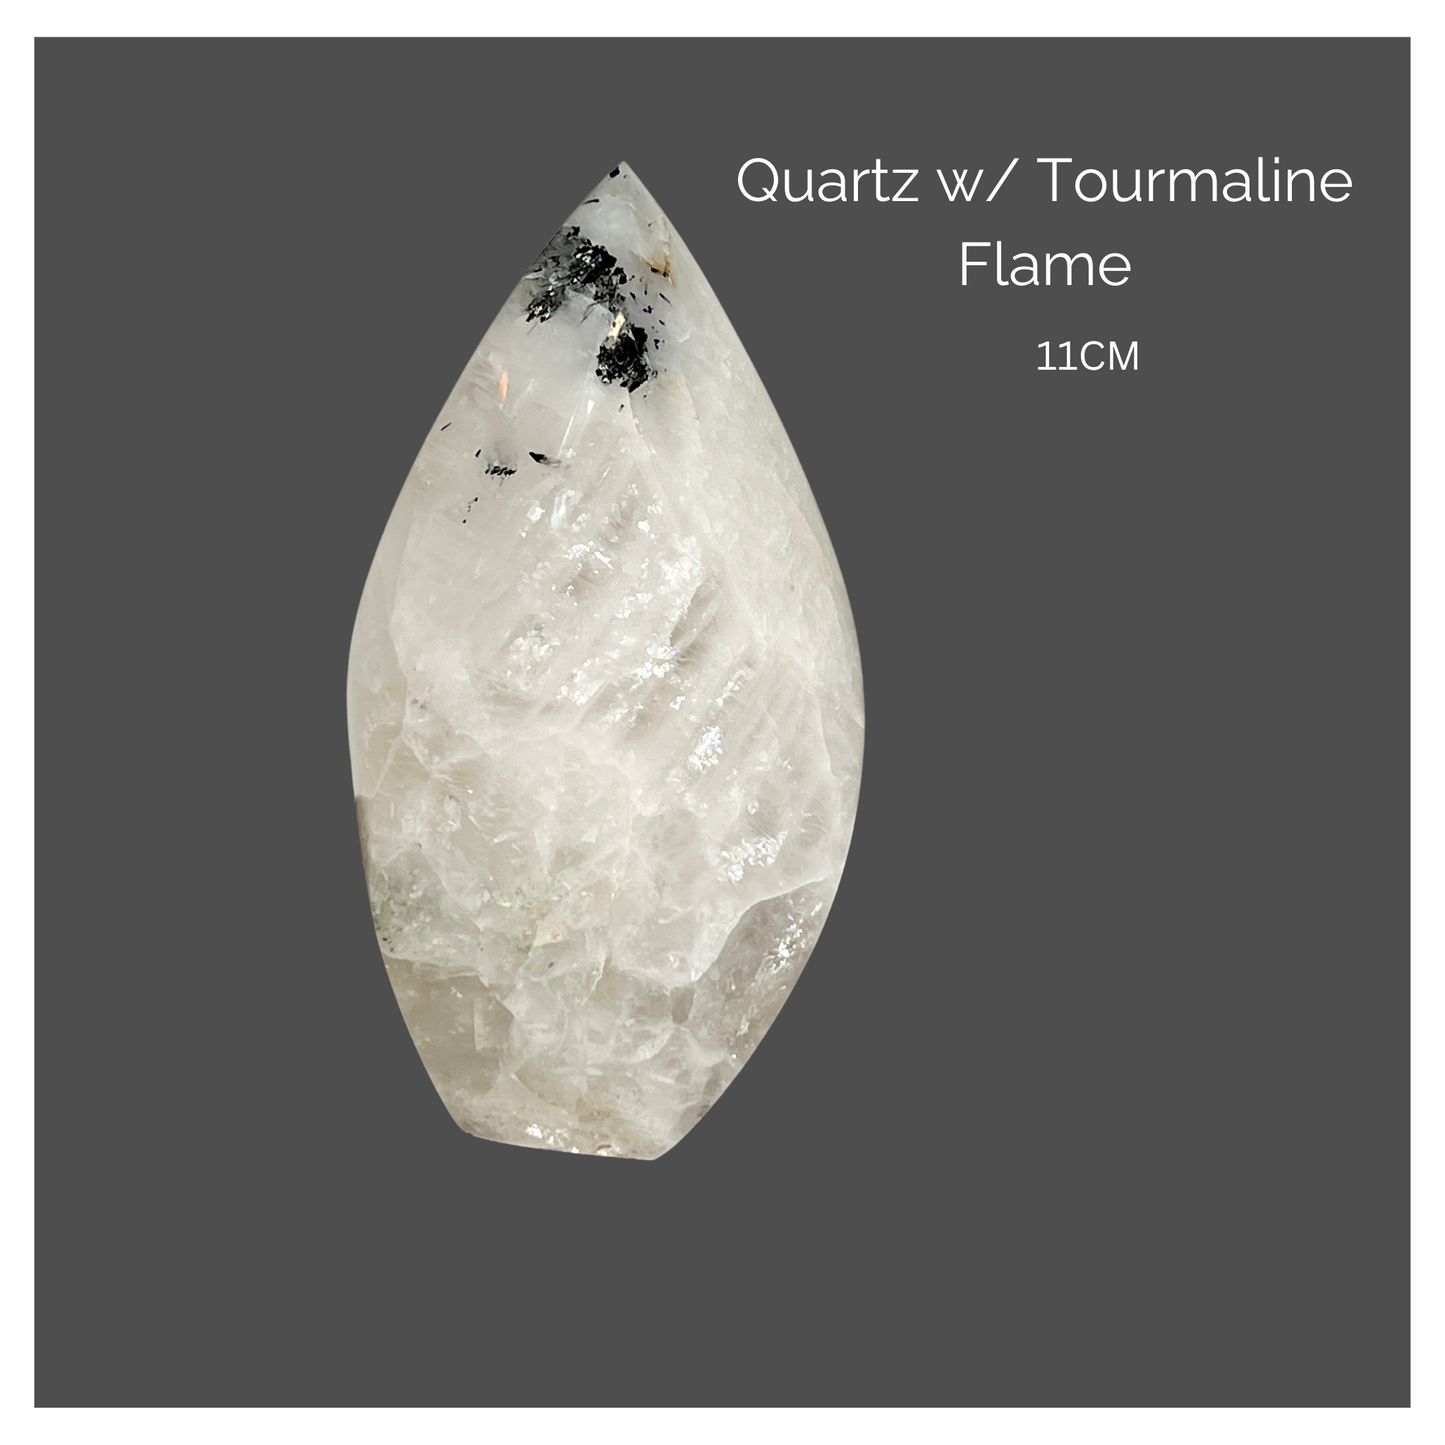 Quartz w/ Tourmaline Flame